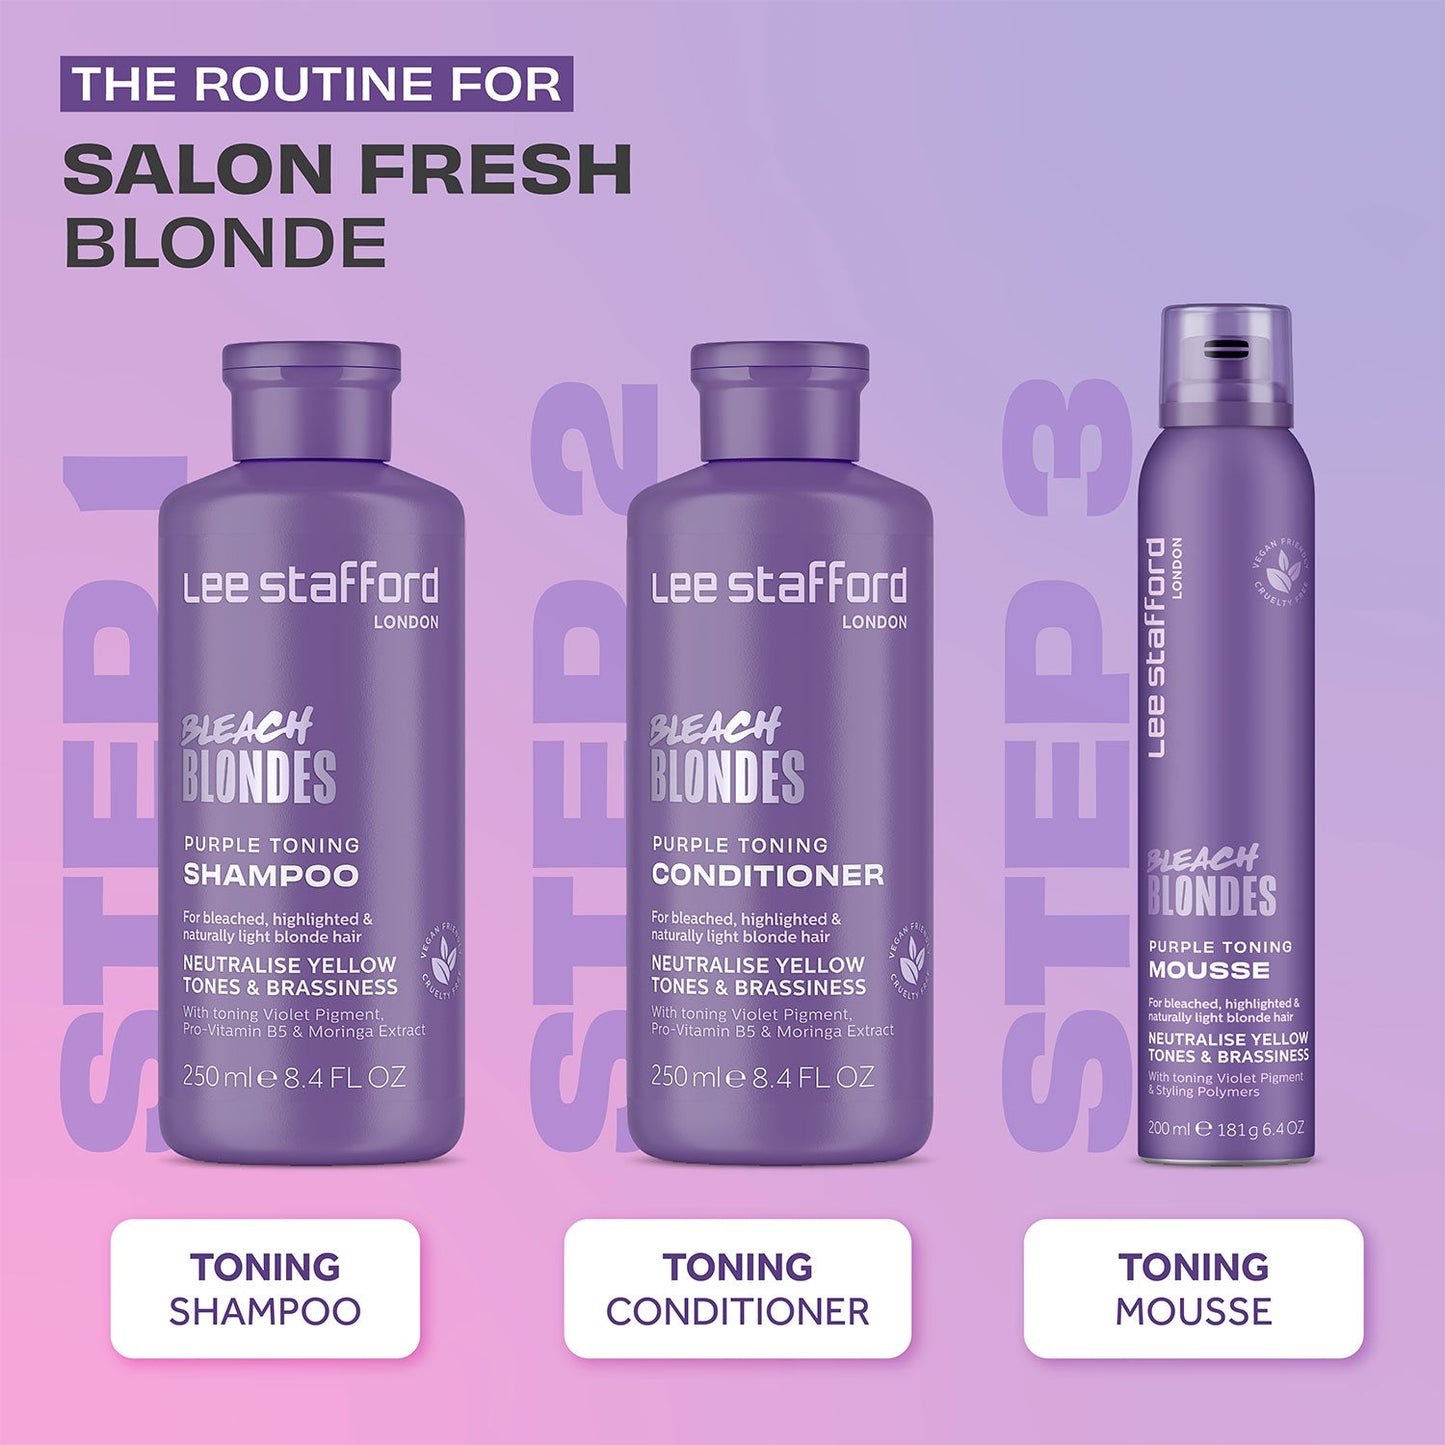 Bleach Blondes Purple Toning Mousse